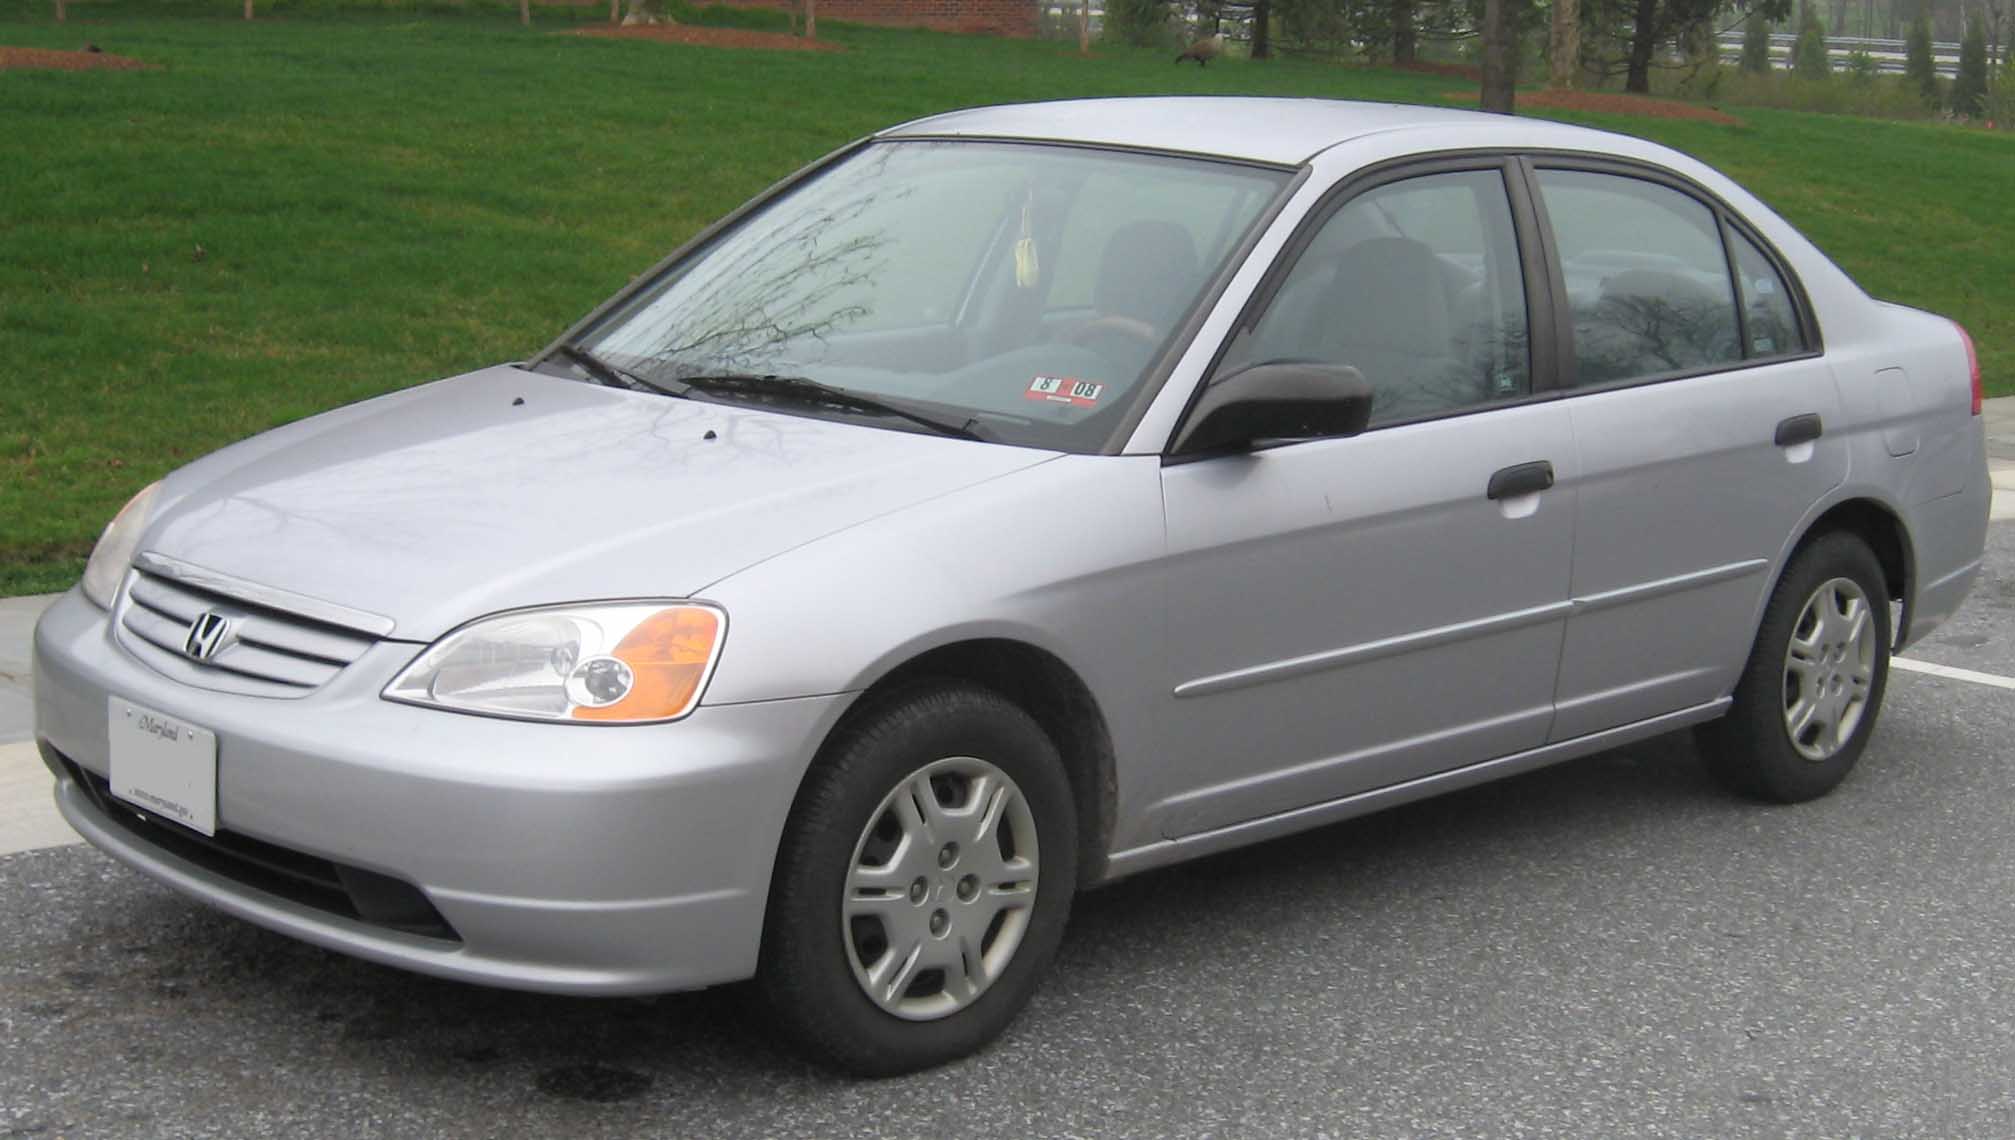 2001-2003_Honda_Civic_sedan.jpg